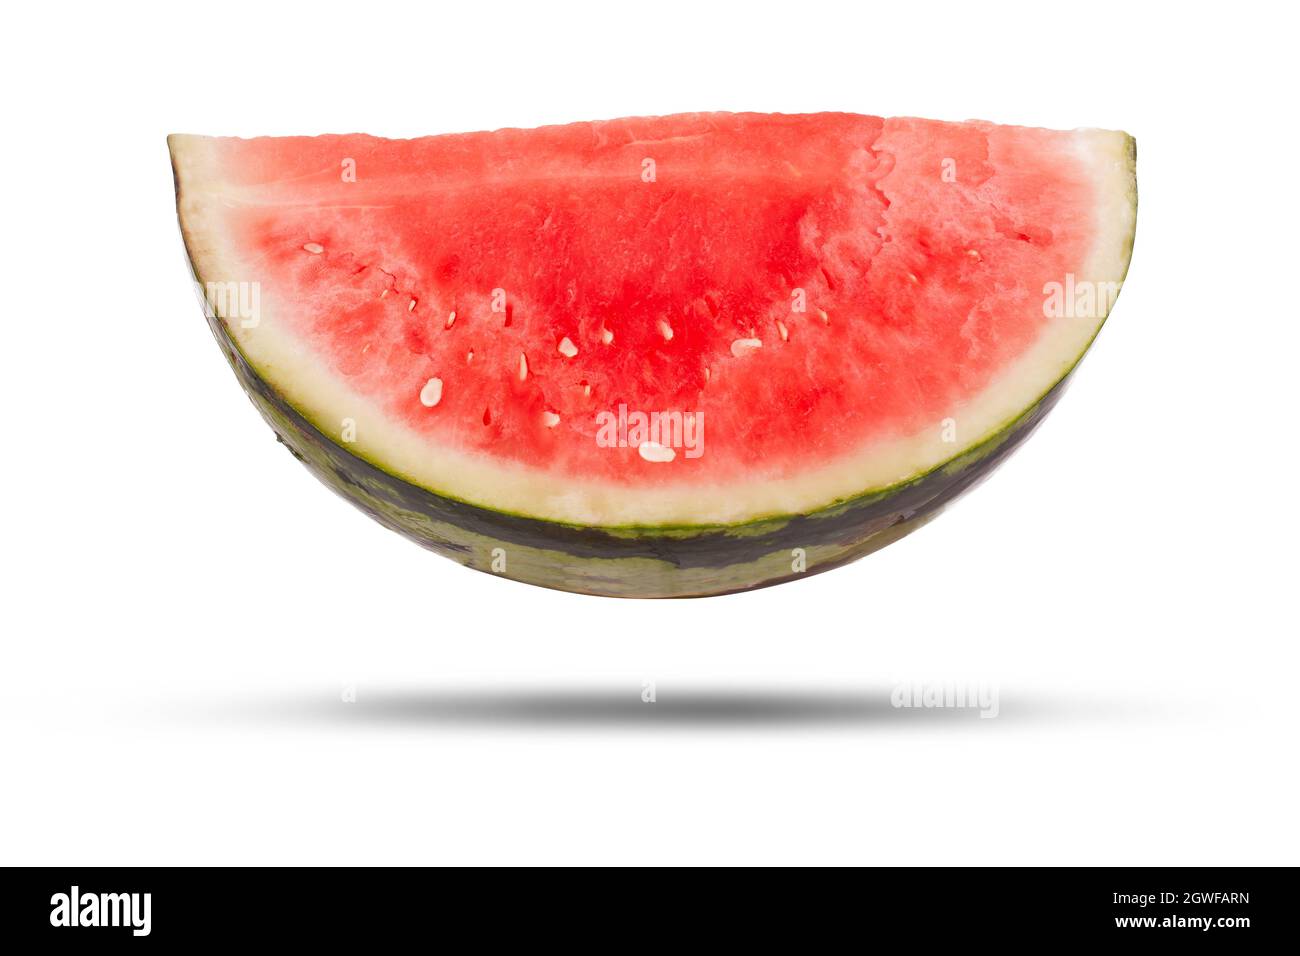 Wassermelonenscheibe isoliert auf weißem Hintergrund. Großes frisches Obst, offen geschnitten mit rotem Fruchtfleisch im Inneren Stockfoto